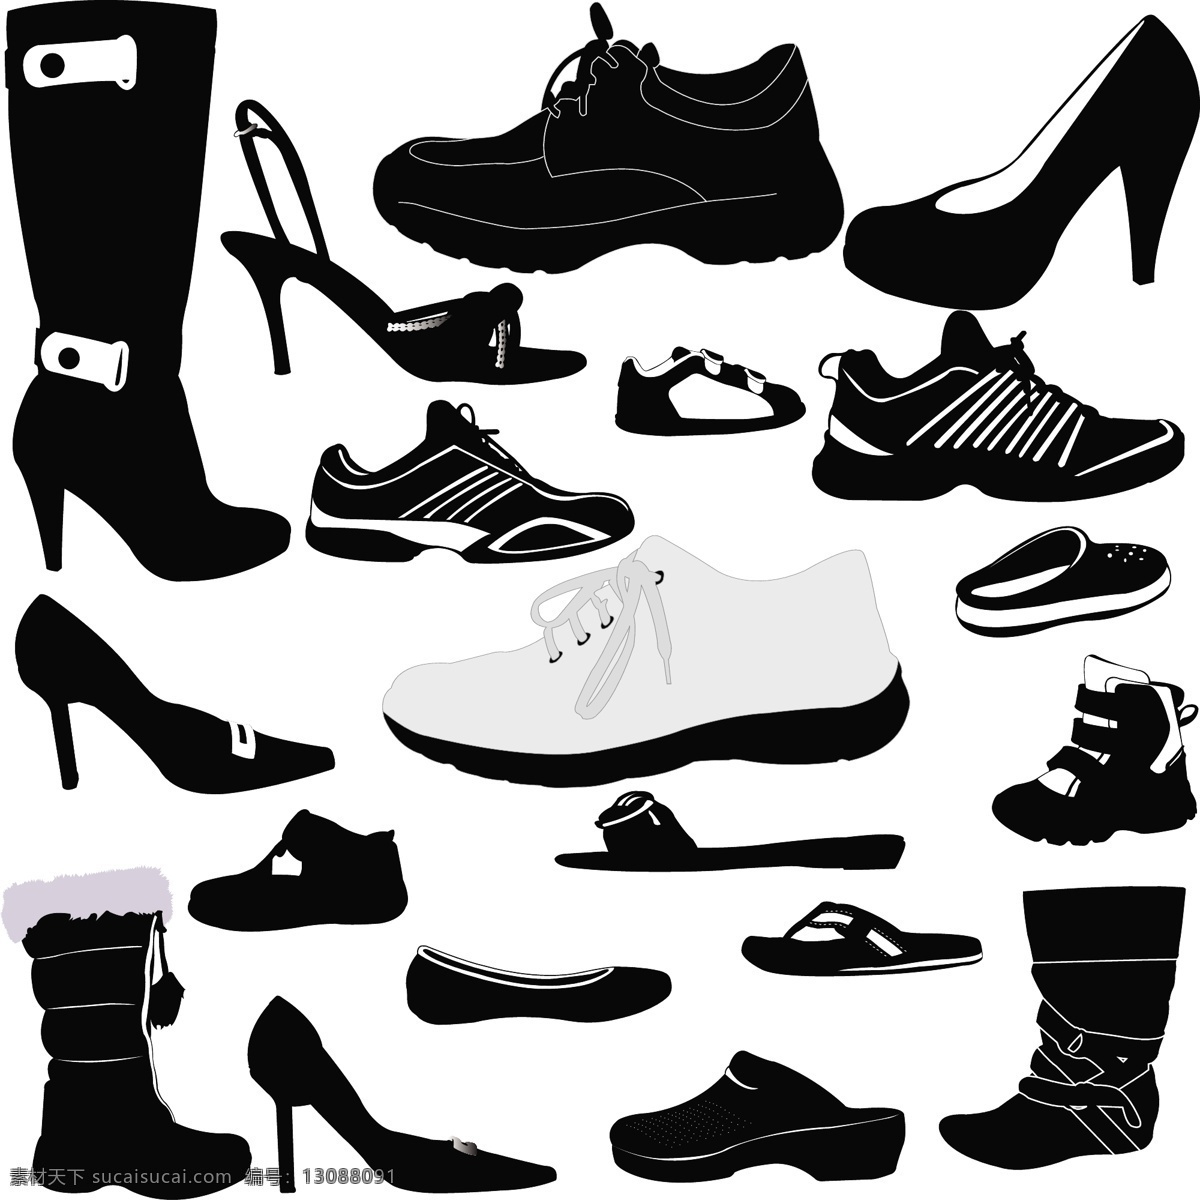 各种 鞋子 剪影 矢量 eps格式 长靴 高跟鞋 凉鞋 矢量图 拖鞋 运动鞋 其他矢量图